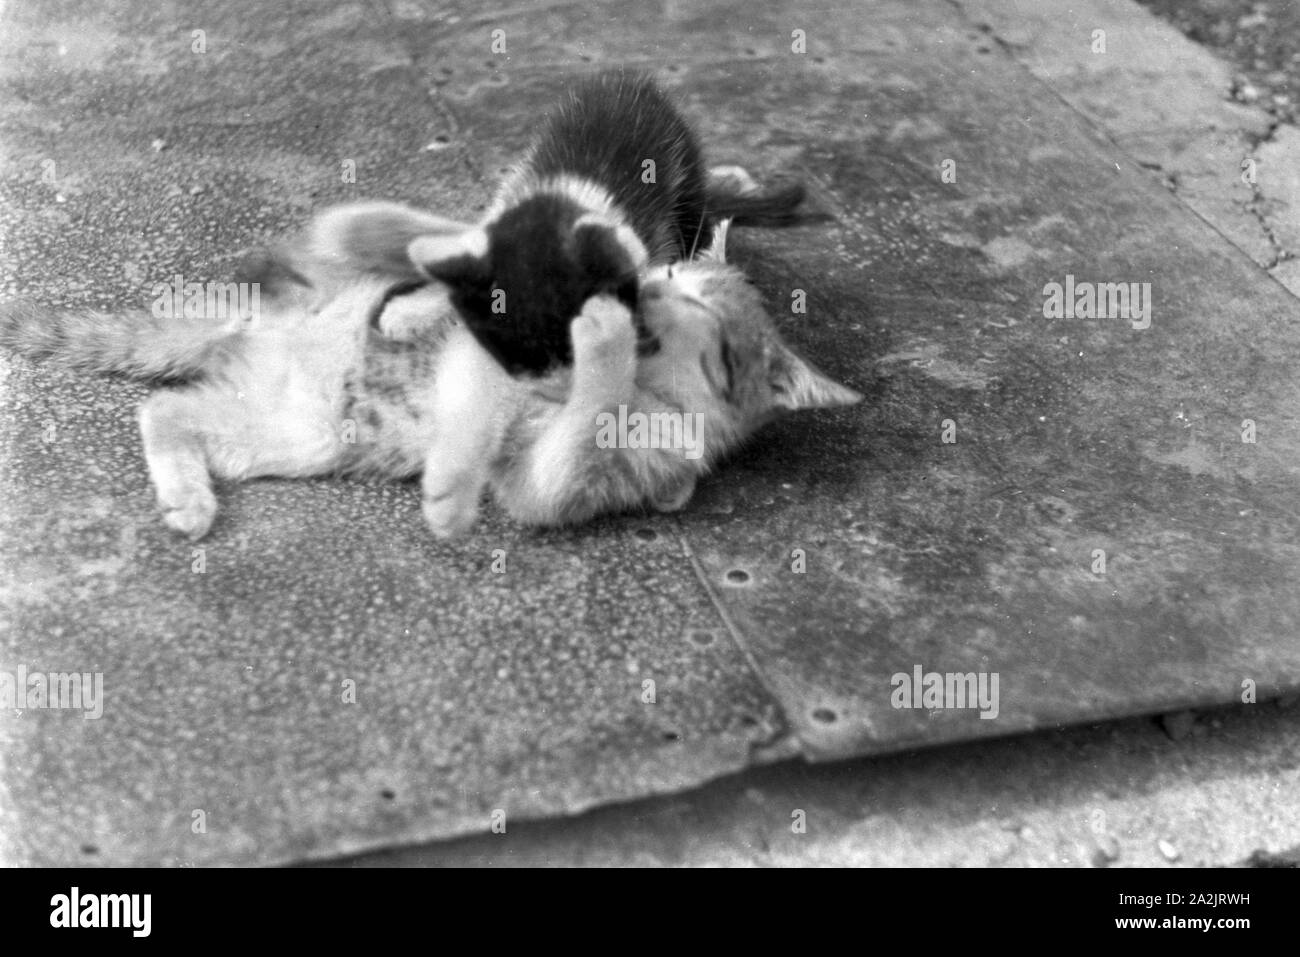 Katzen spielen miteinander, Deutschland 1930er Jahre. Cats playing with each other, Germany 1930s. Stock Photo